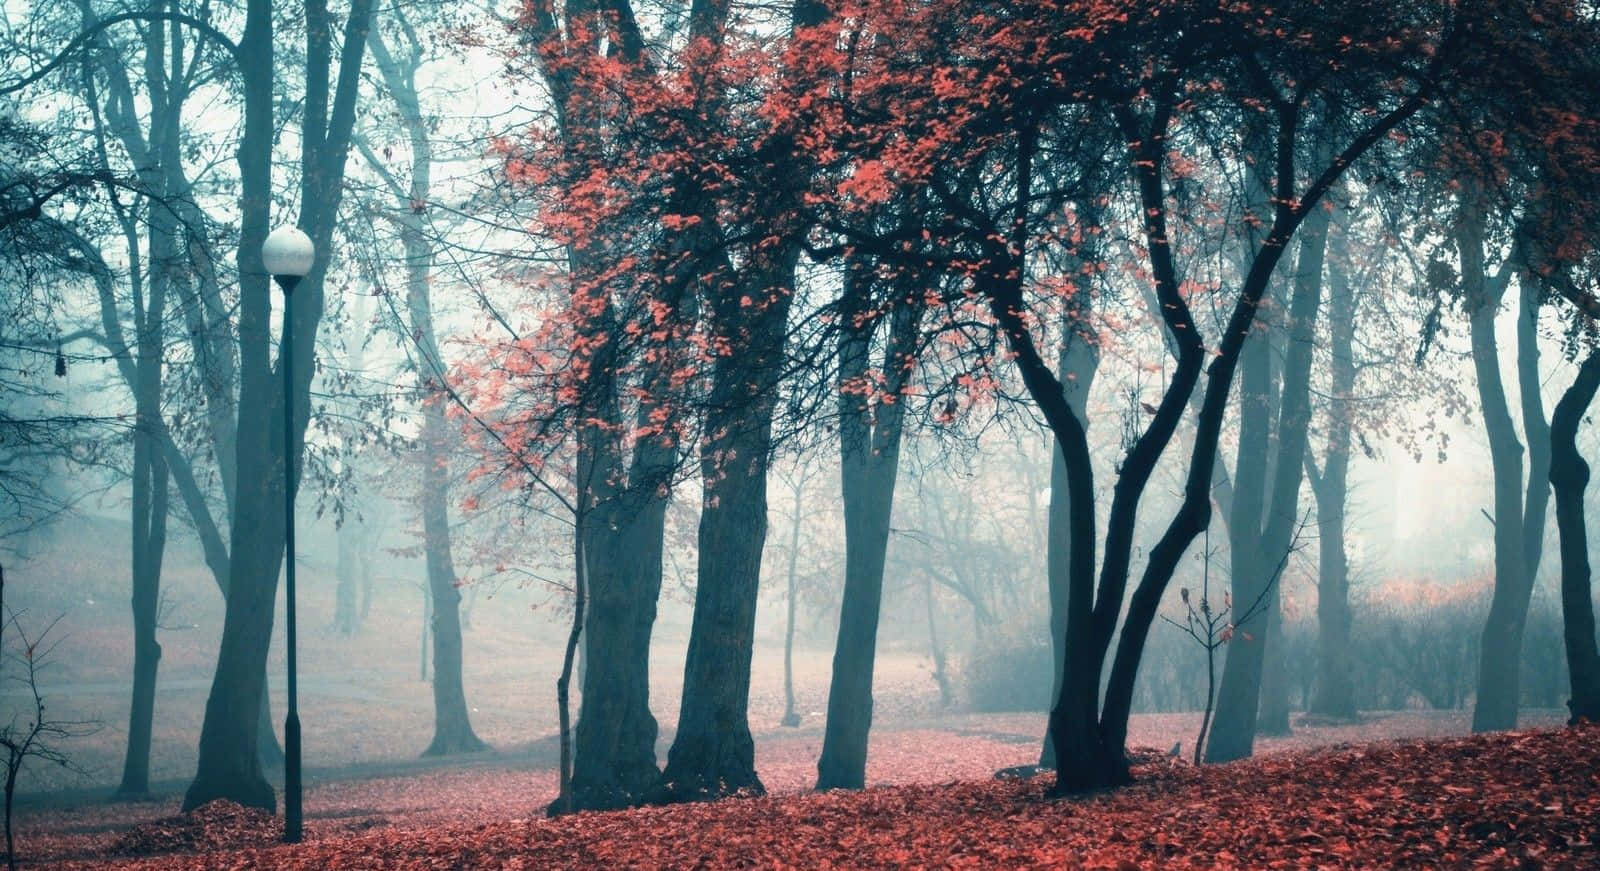 Einnebeliger Wald Mit Roten Blättern Und Bäumen.